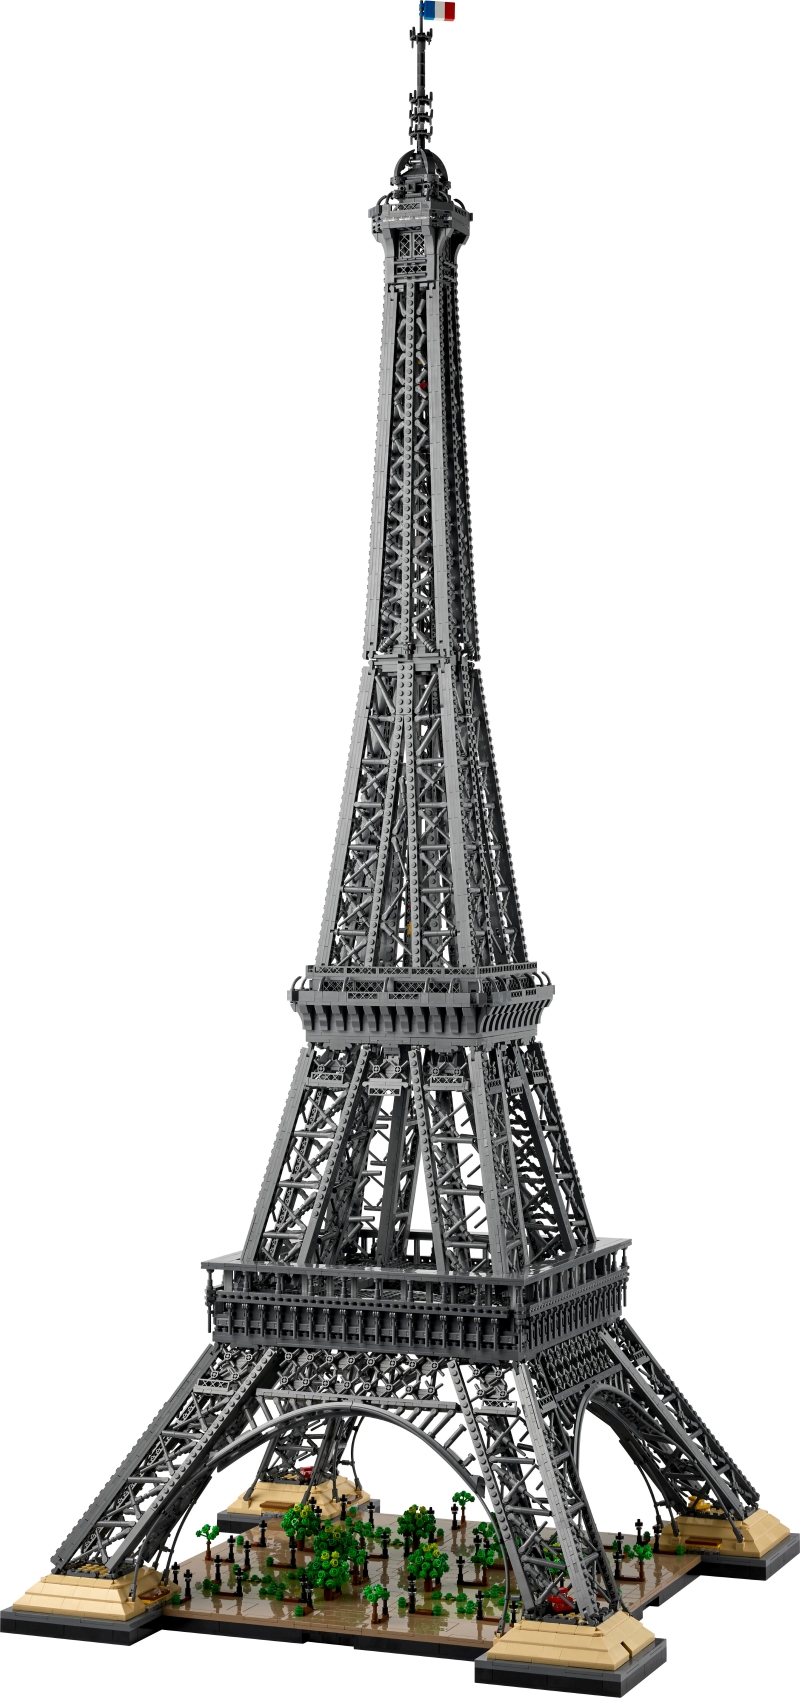 You are currently viewing Record de hauteur pour cette Tour Eiffel !